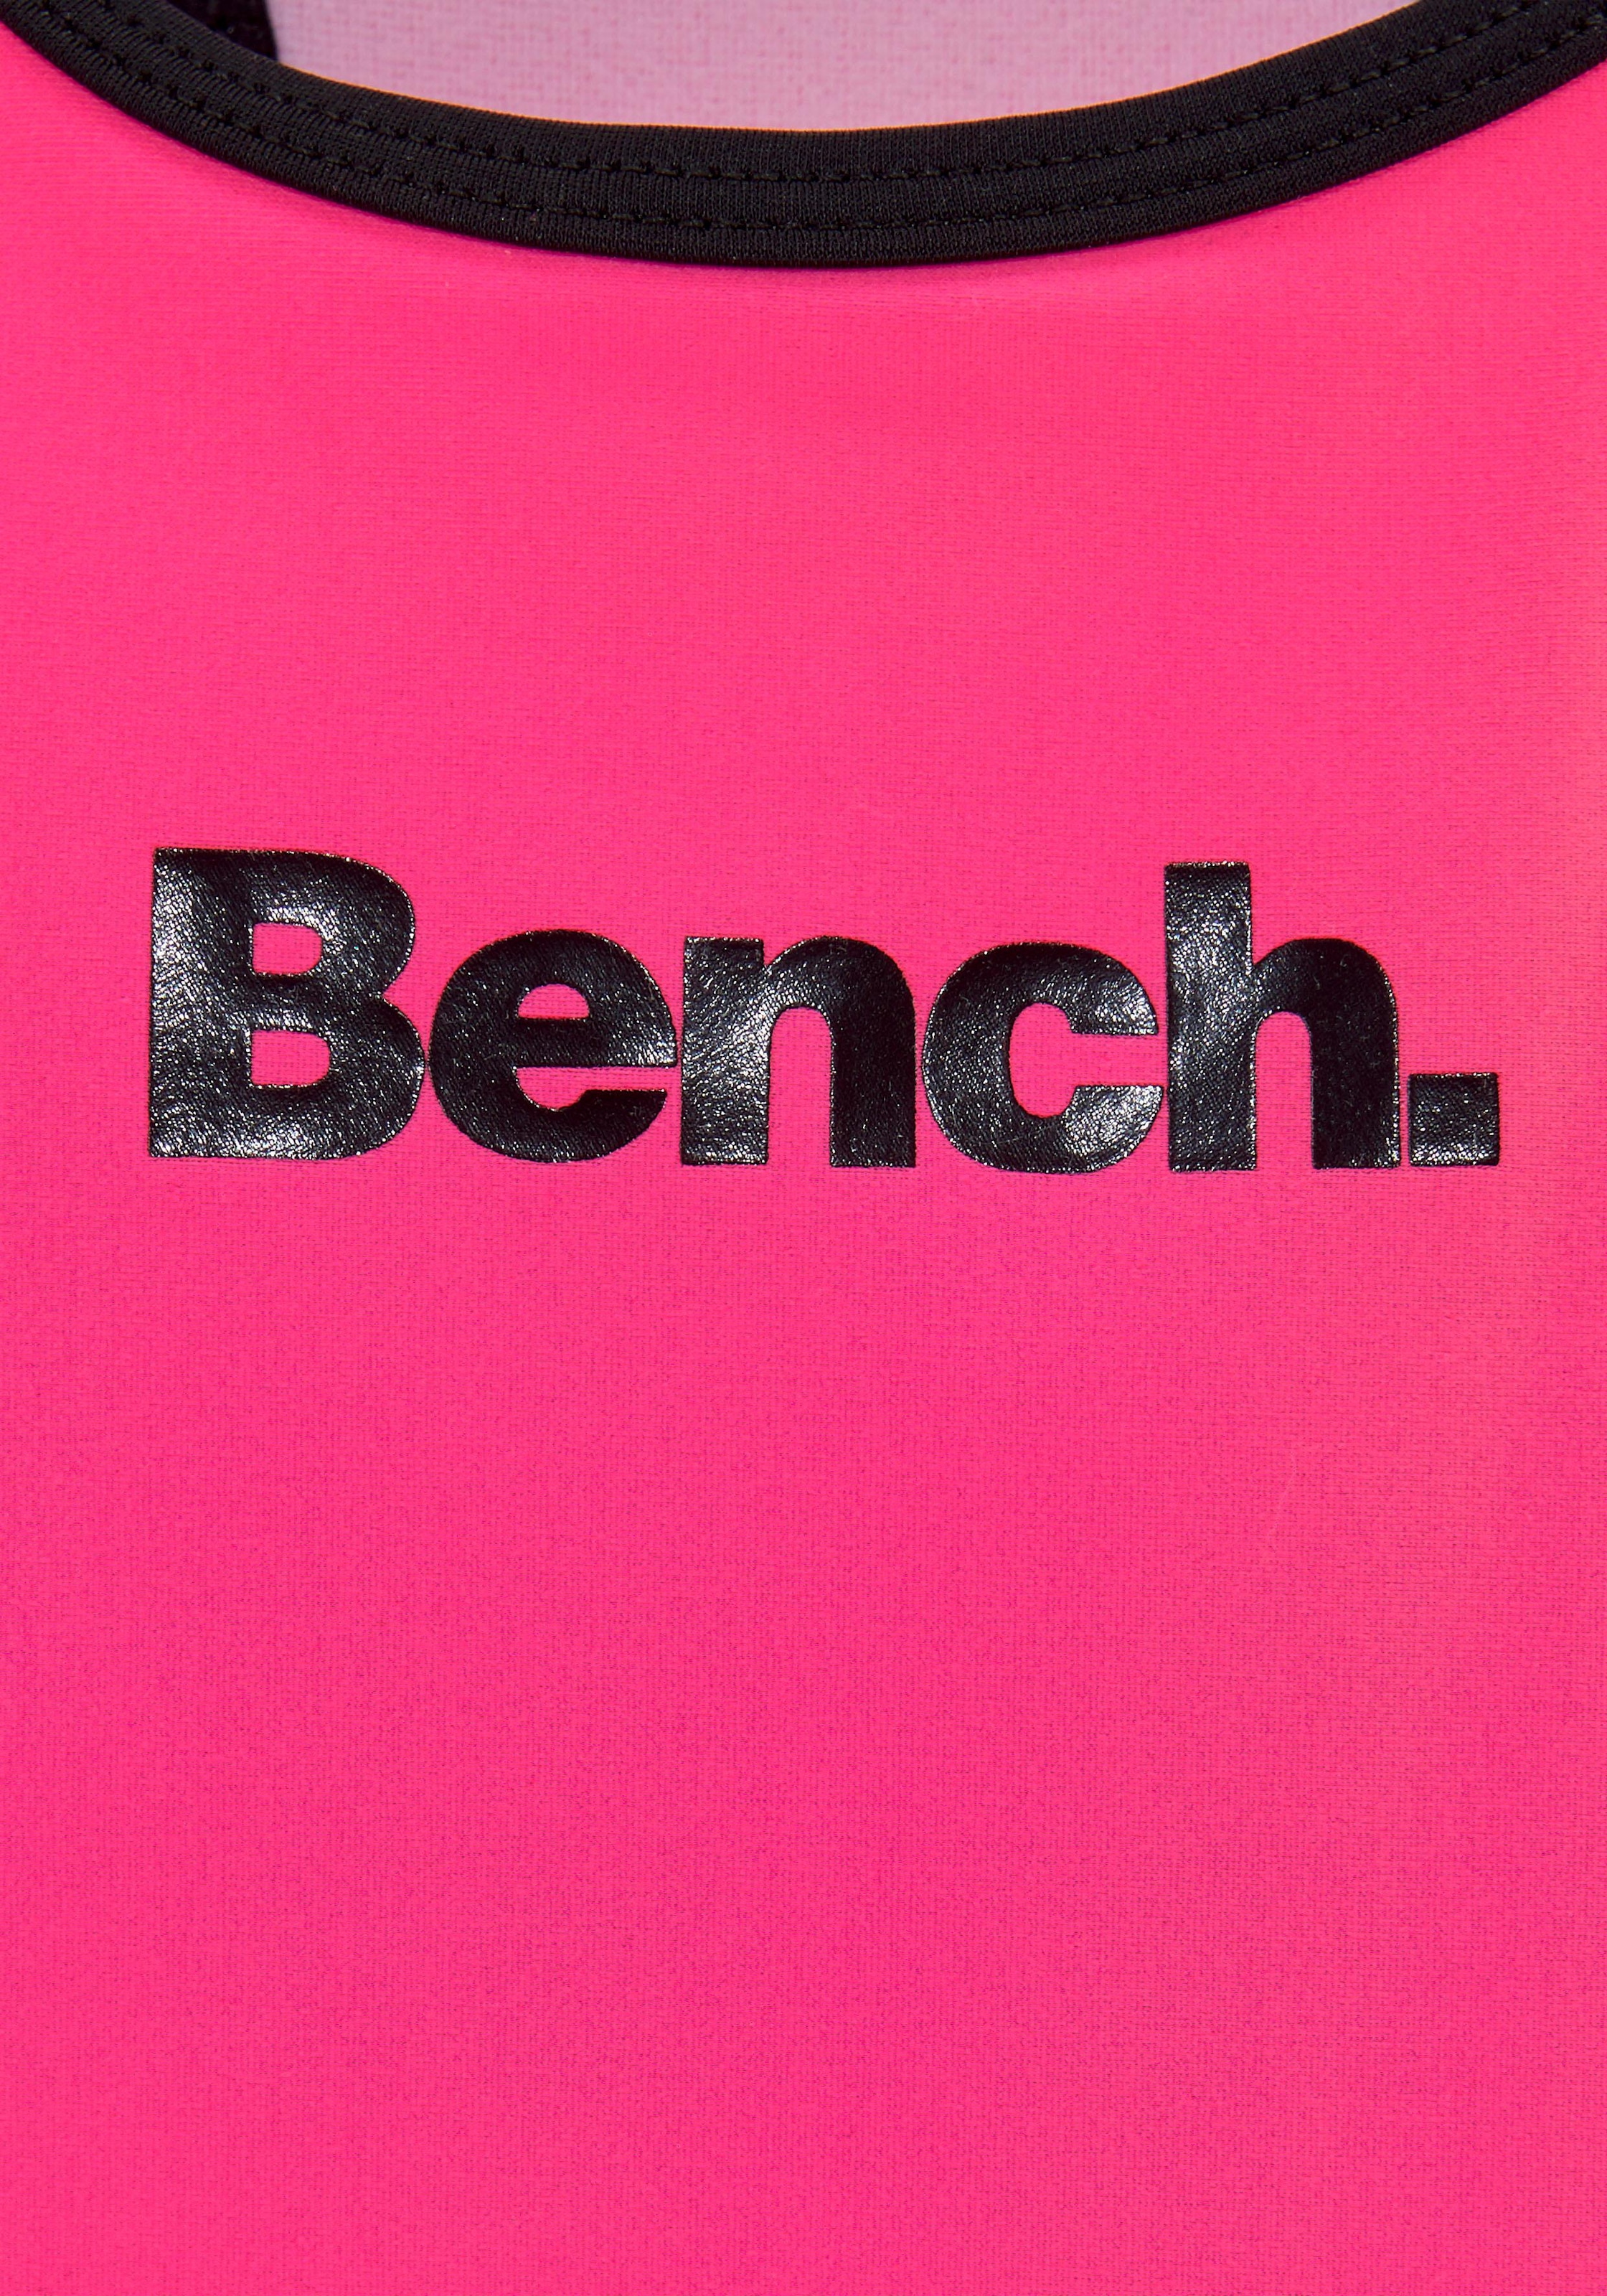 Logoprint Badeanzug, BAUR kaufen mit Bench. |